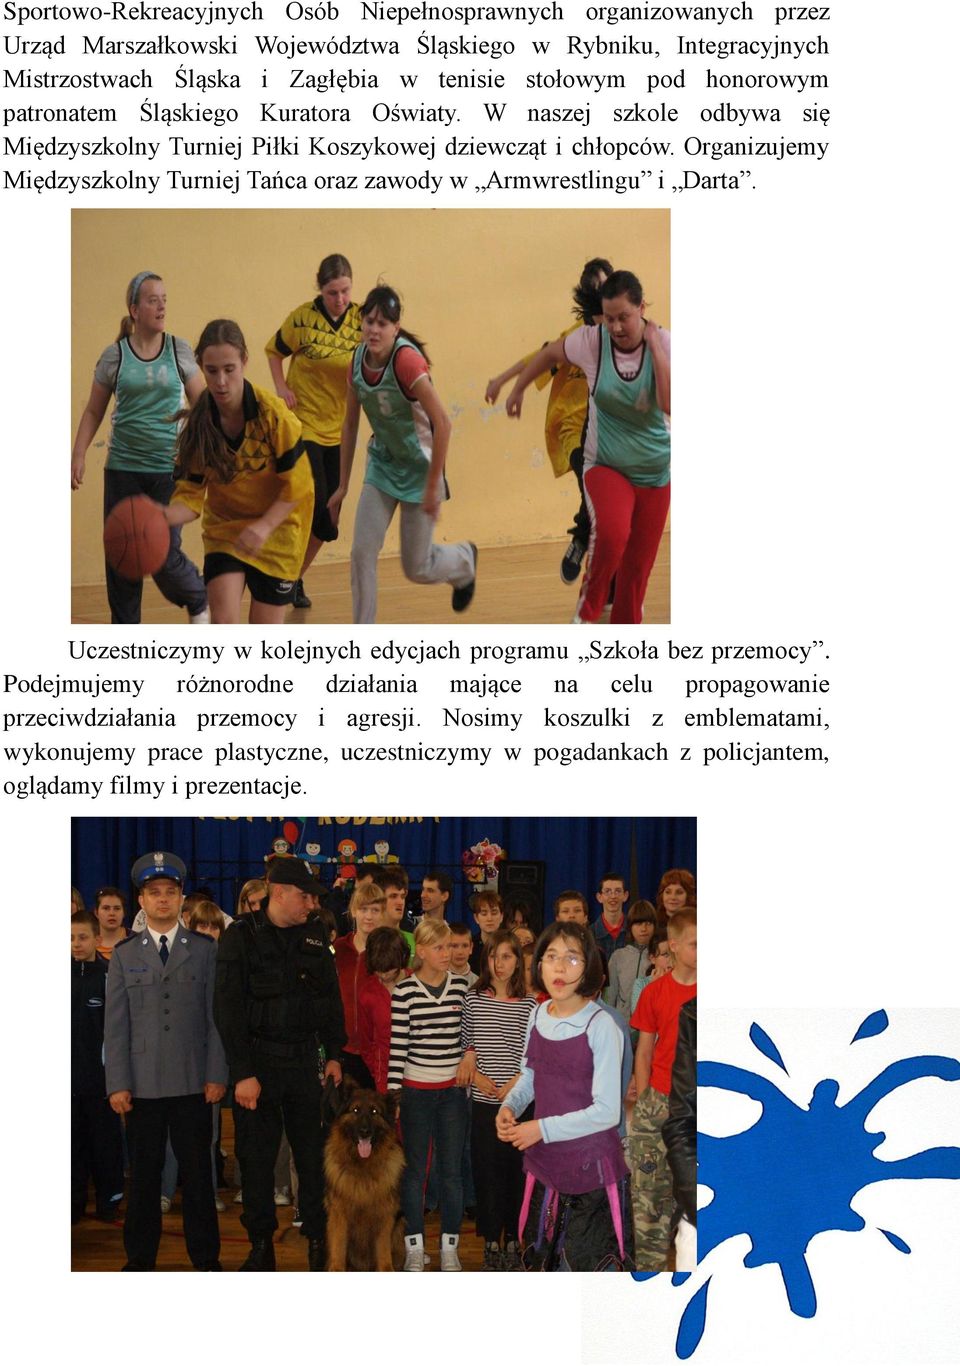 Organizujemy Międzyszkolny Turniej Tańca oraz zawody w Armwrestlingu i Darta. Uczestniczymy w kolejnych edycjach programu Szkoła bez przemocy.